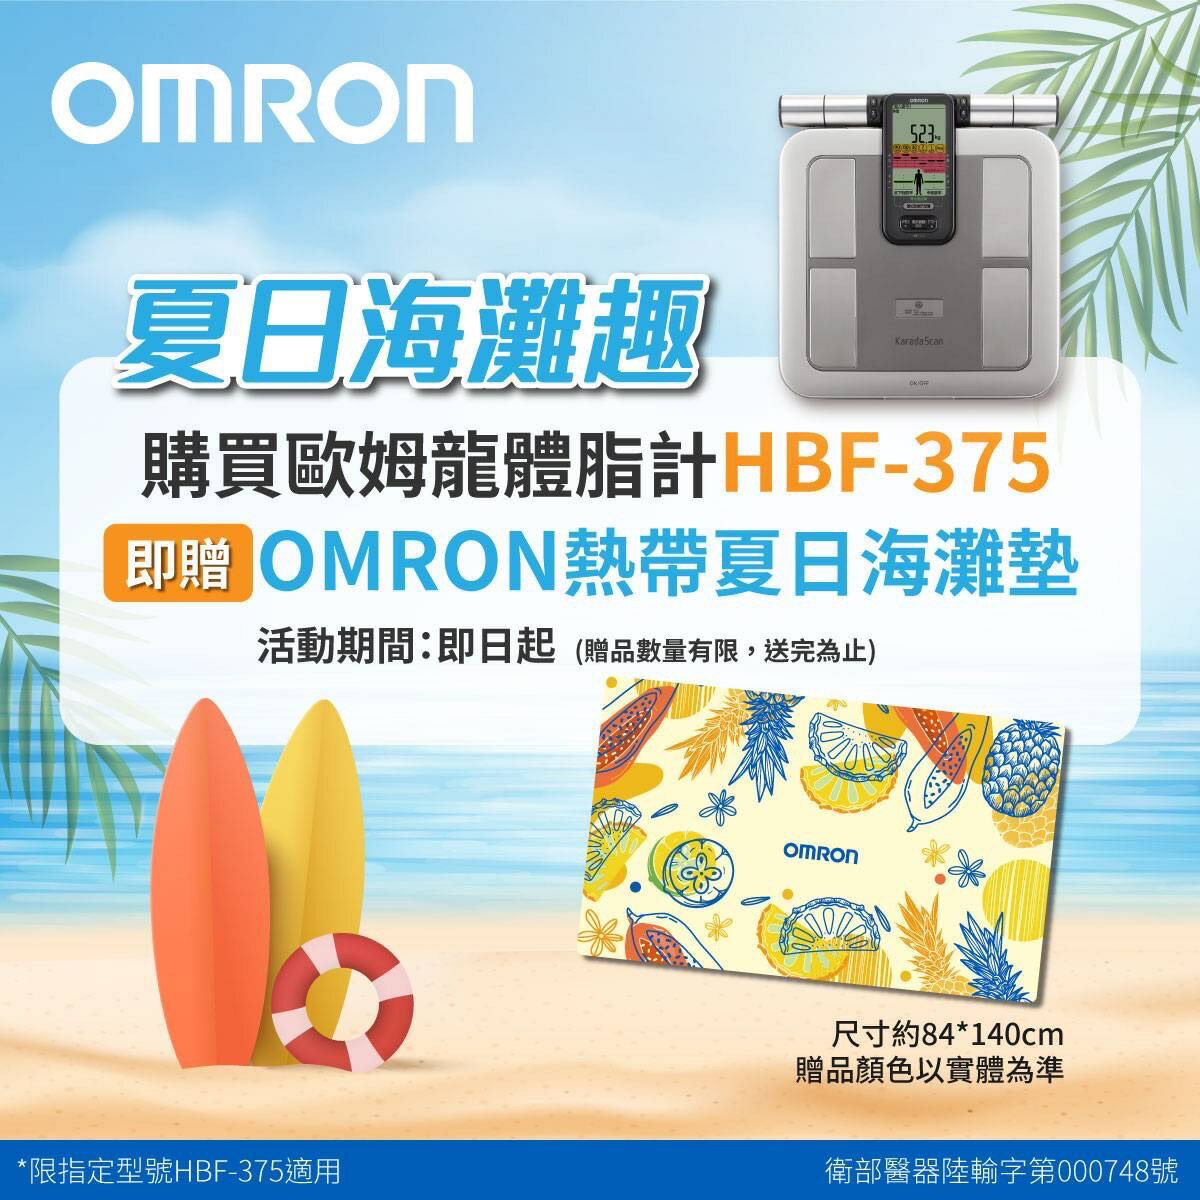 【公司貨】OMRON 歐姆龍 HBF375 體脂計 一年保固 公司貨 體重計 體脂肪計